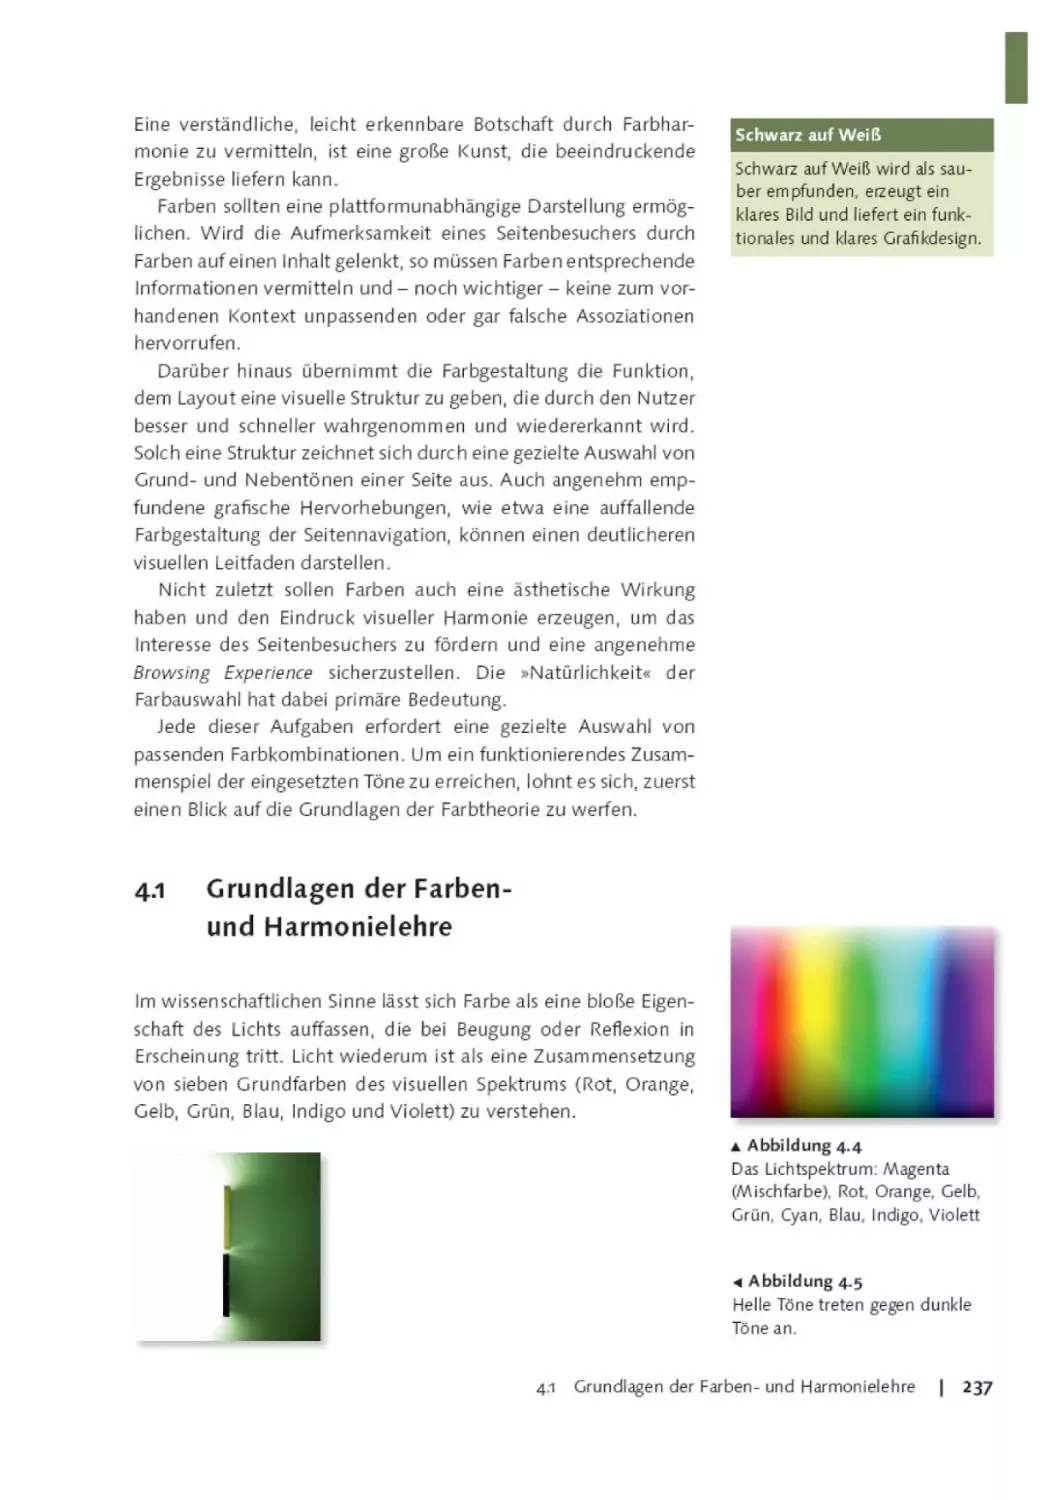 4.1        Grundlagen der Farben-und Harmonielehre